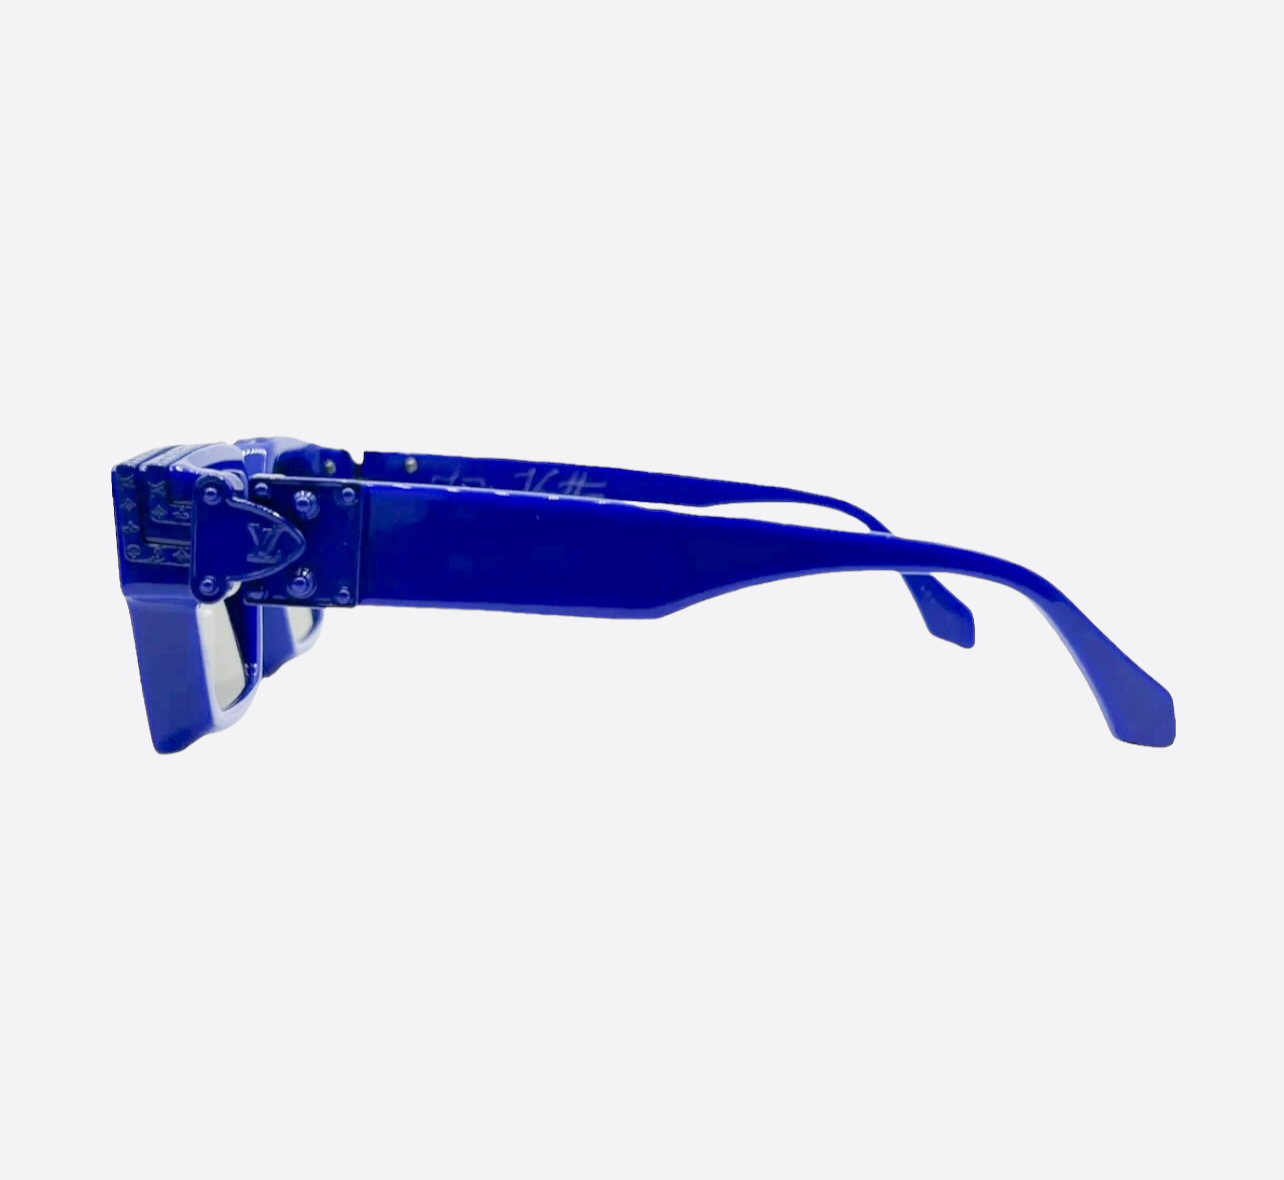 Louis Vuitton - Authenticated 1.1 Millionnaires Sunglasses - Plastic Blue Plain For Man, Never Worn